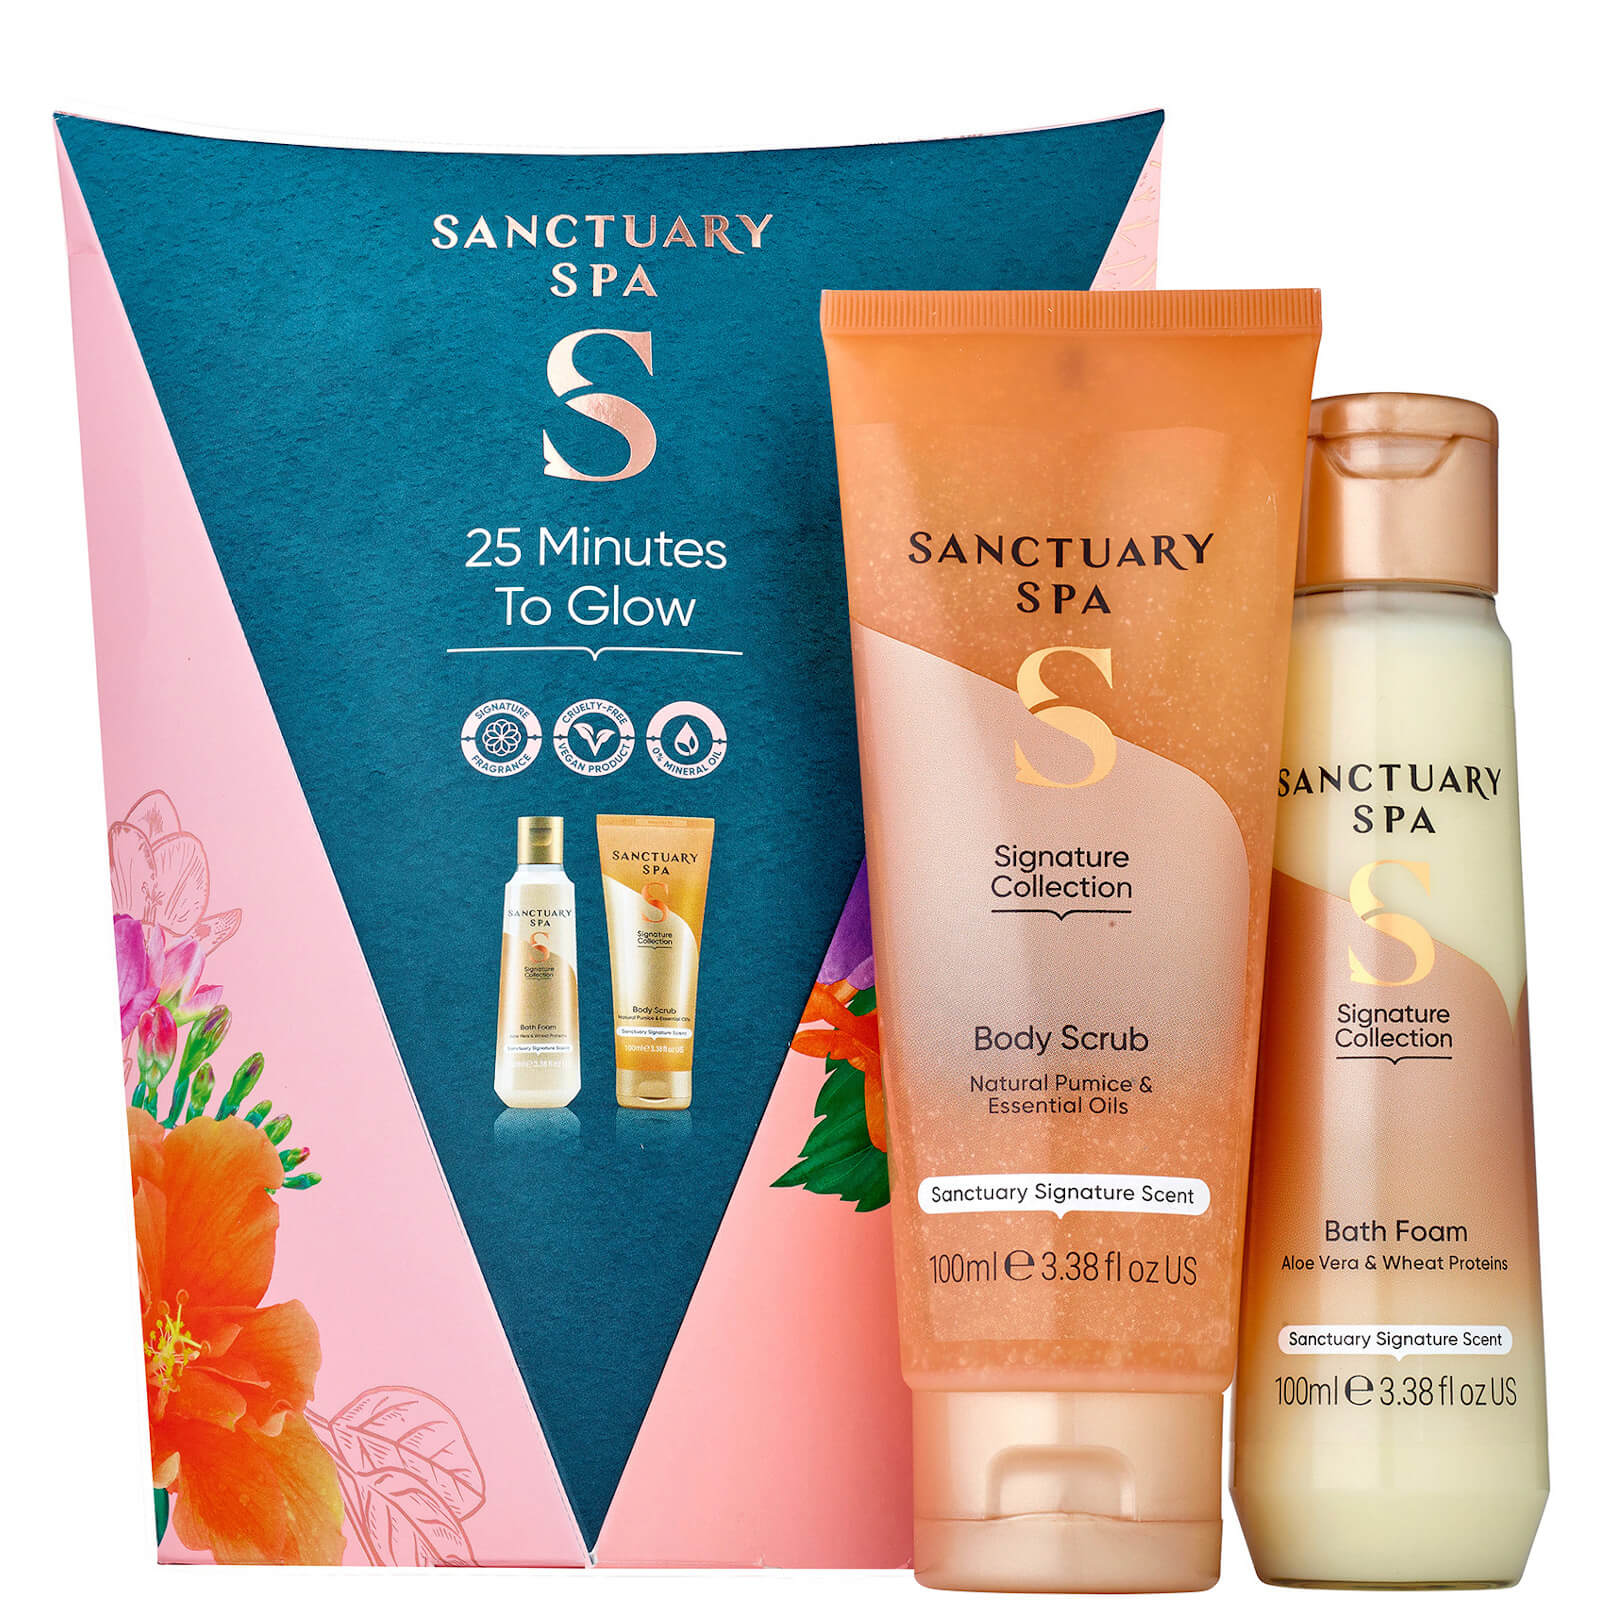 Sanctuary Spa 25 Minutes to Glow Gift Set